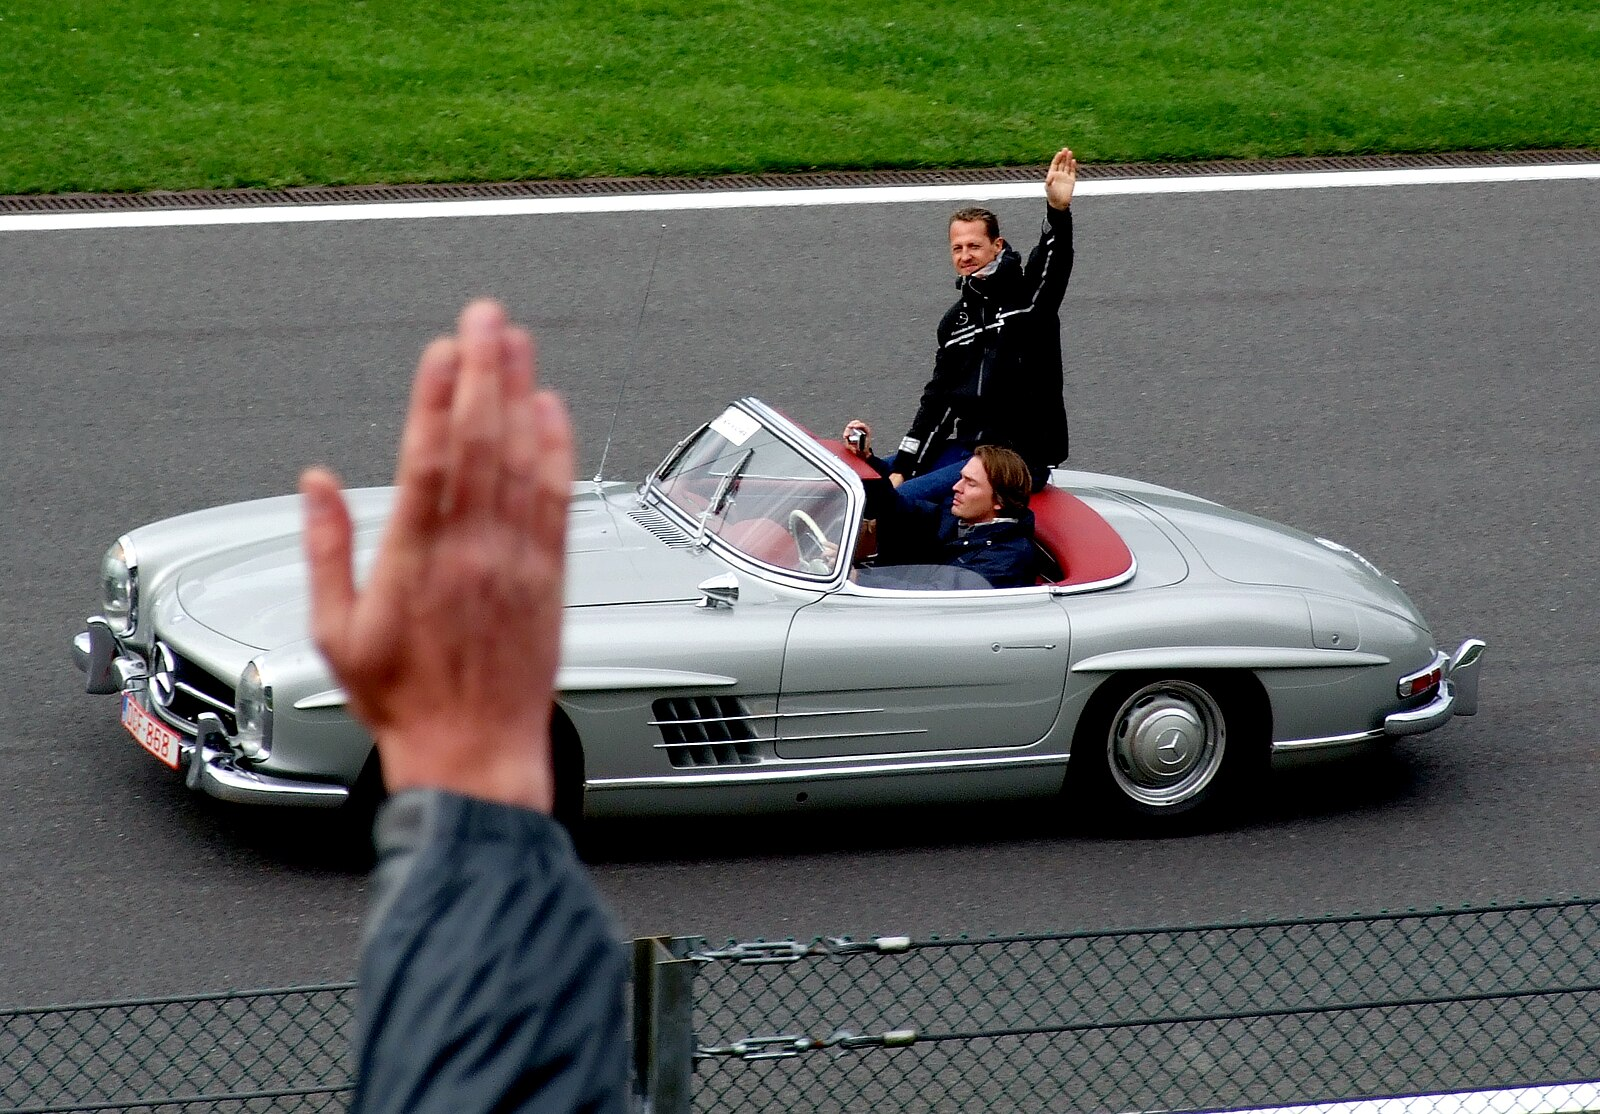 Michael Schumacher : La légende de la F1 et son remarquable héritage, RTR Sports